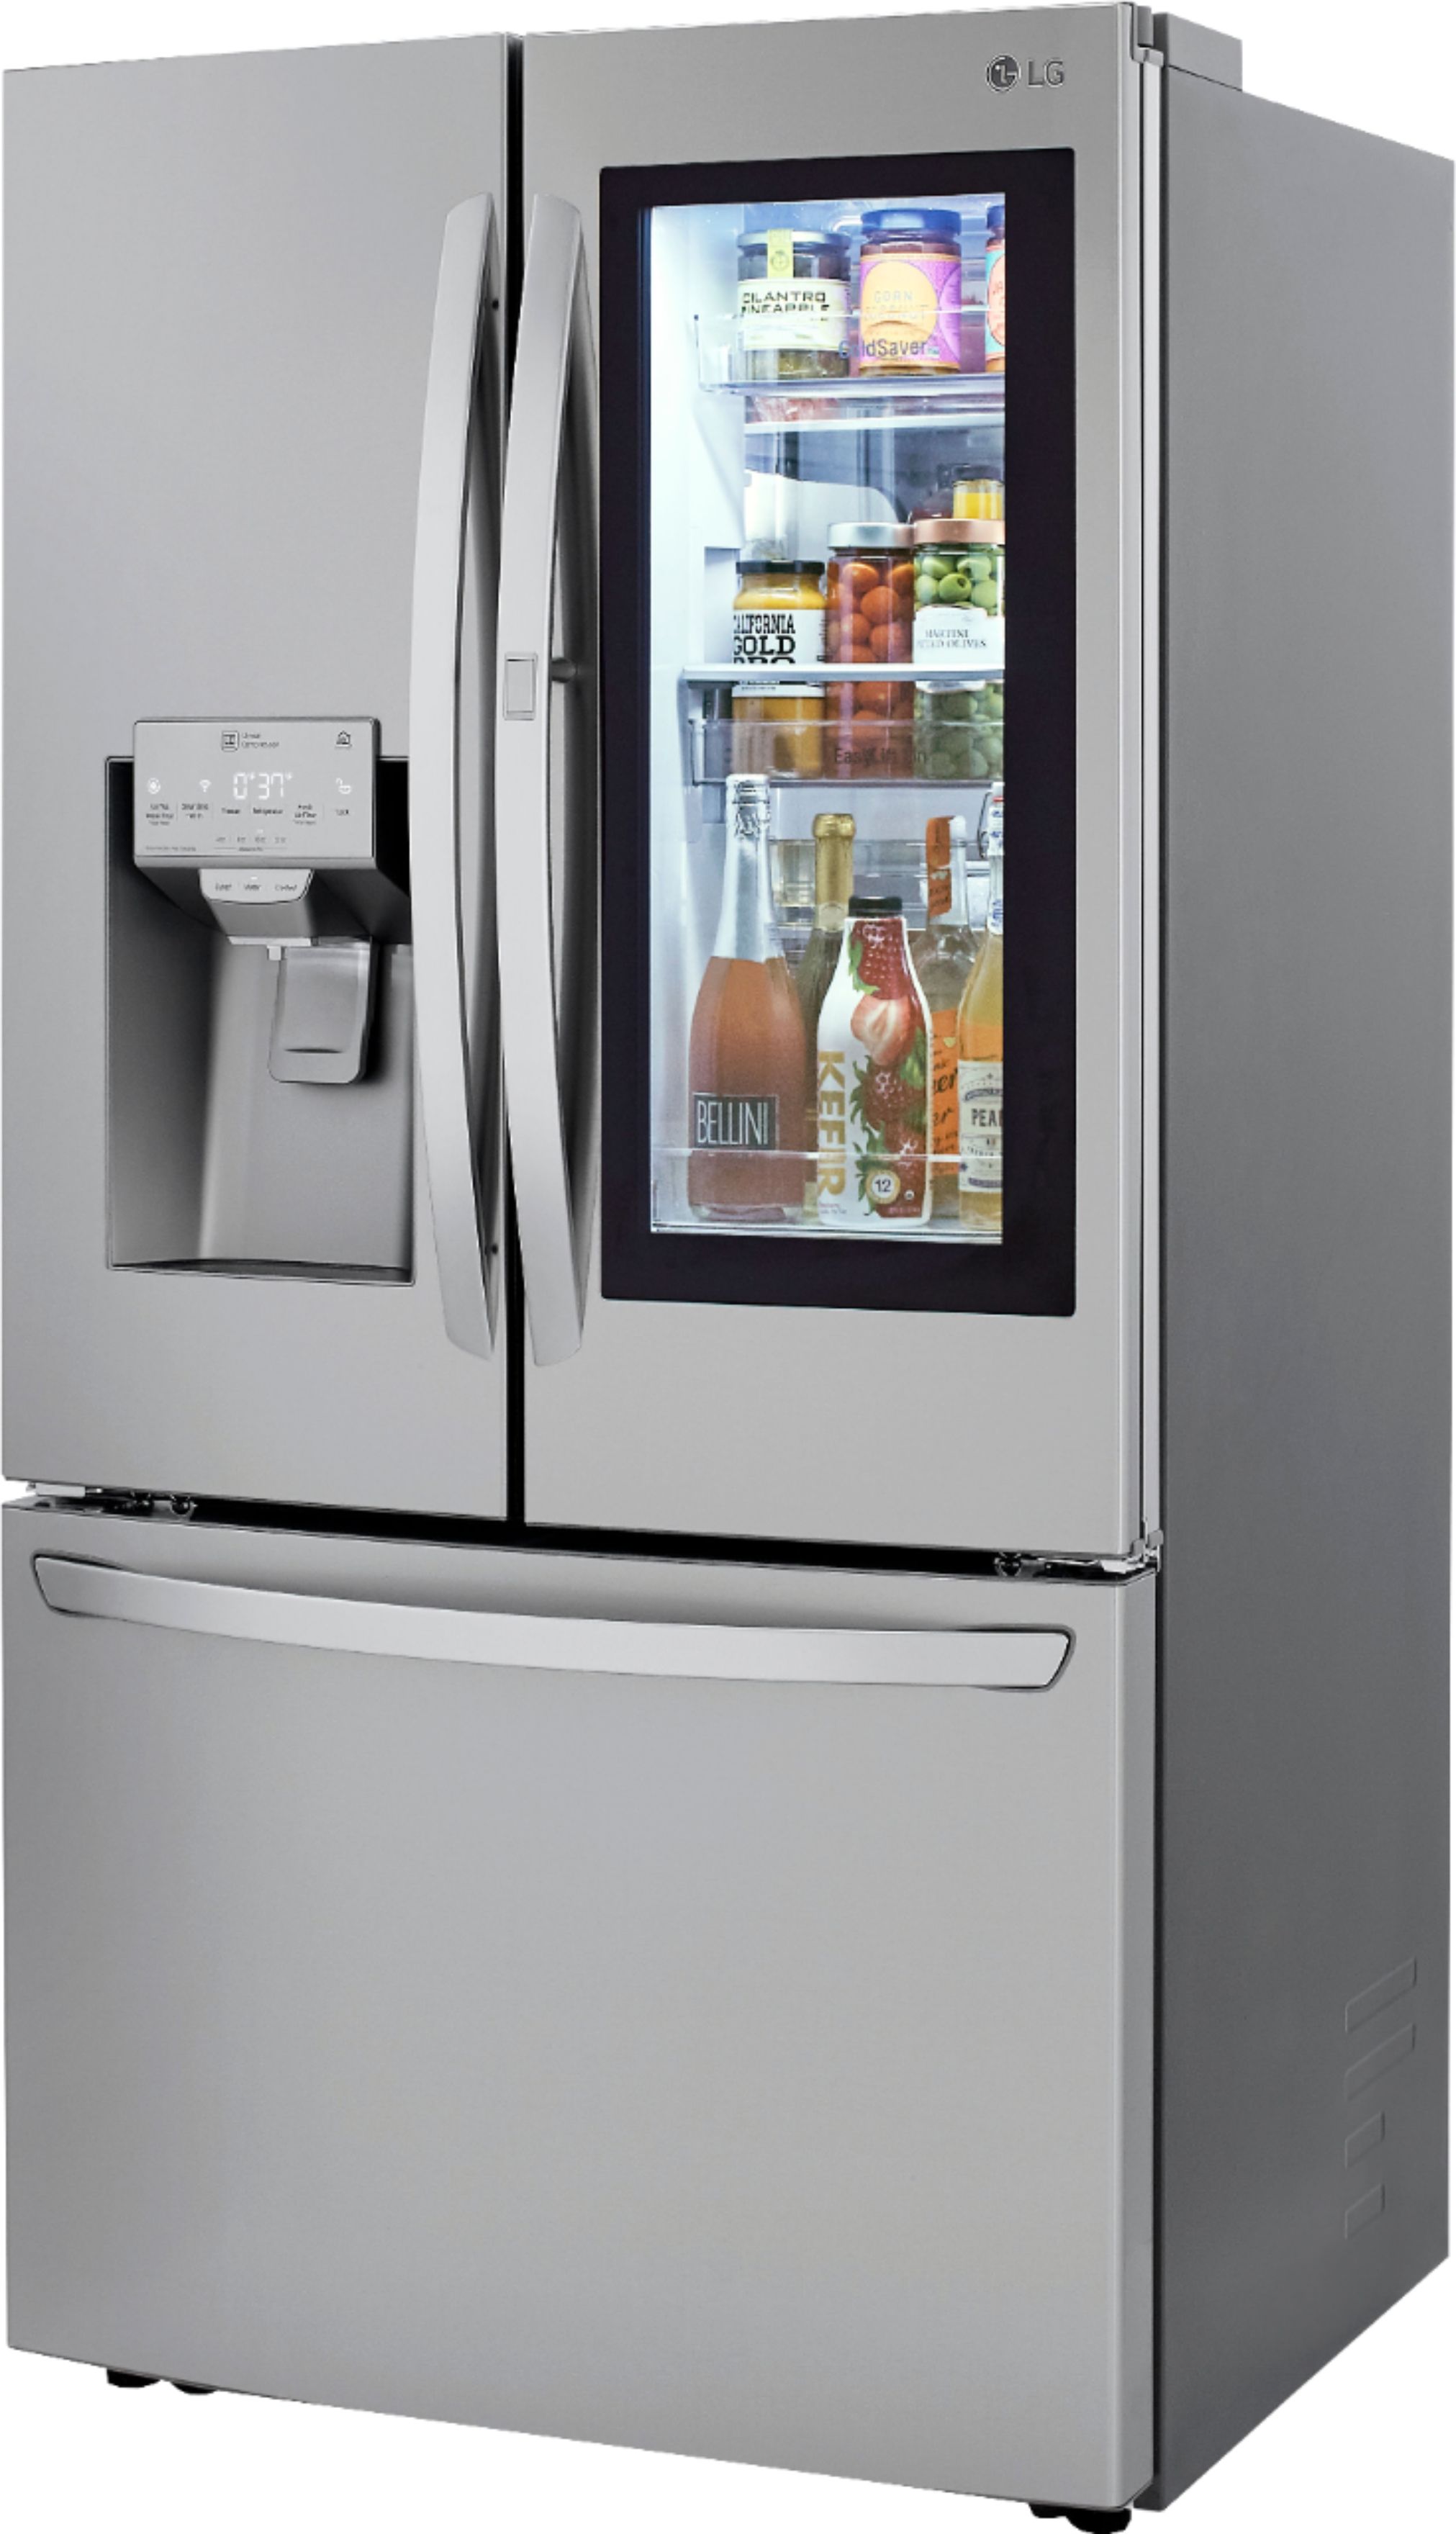 Left View: LG - 29.7 Cu. Ft. French InstaView Door-in-Door Refrigerator with Craft Ice - Stainless steel